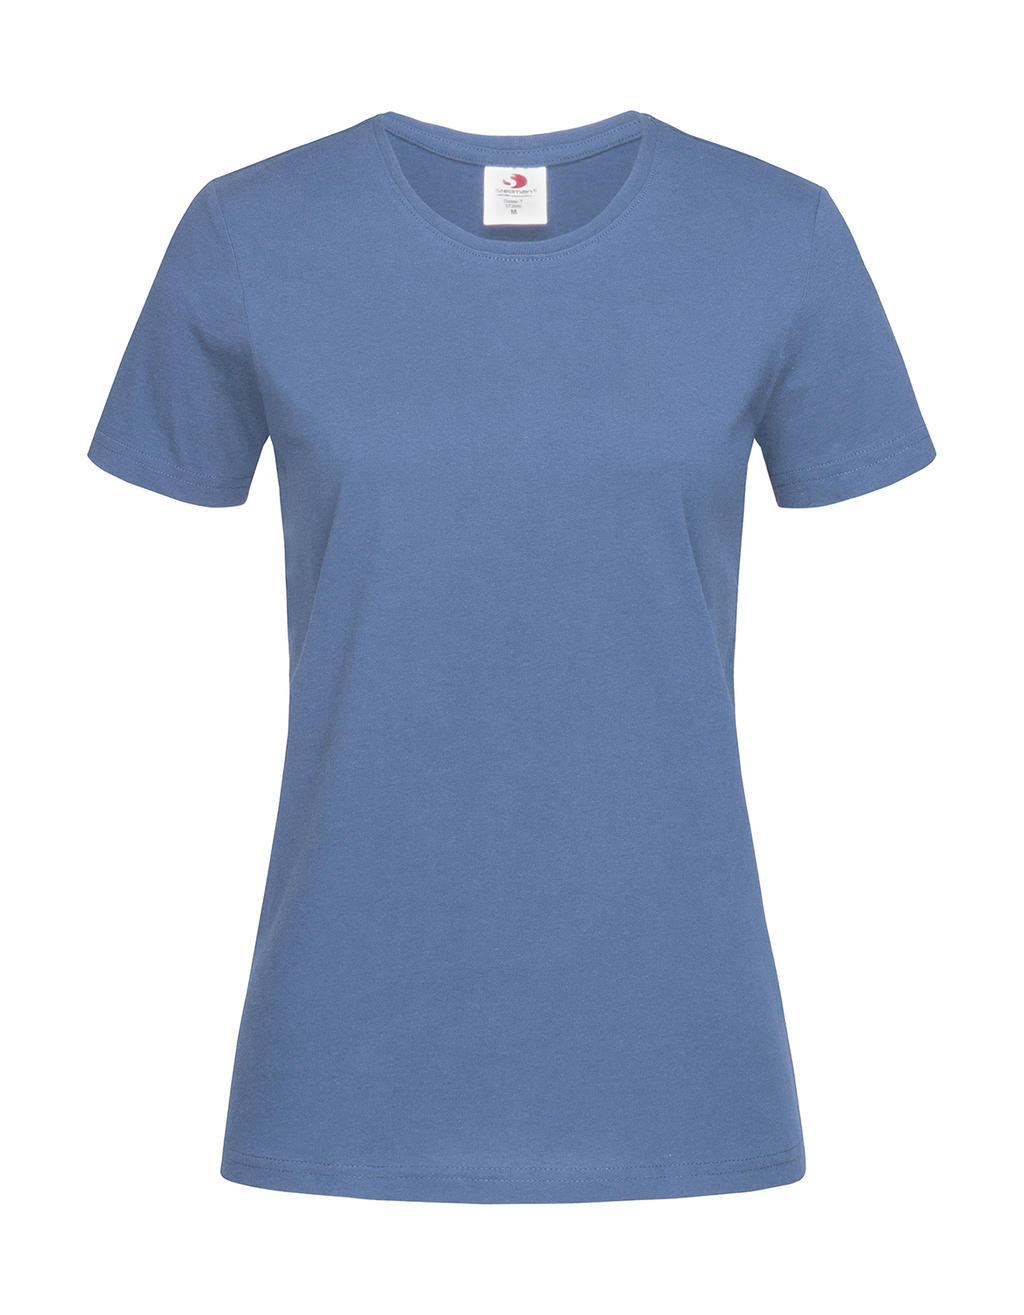 Tričko dámské Stedman Fitted s kulatým výstřihem - středně modré, XS